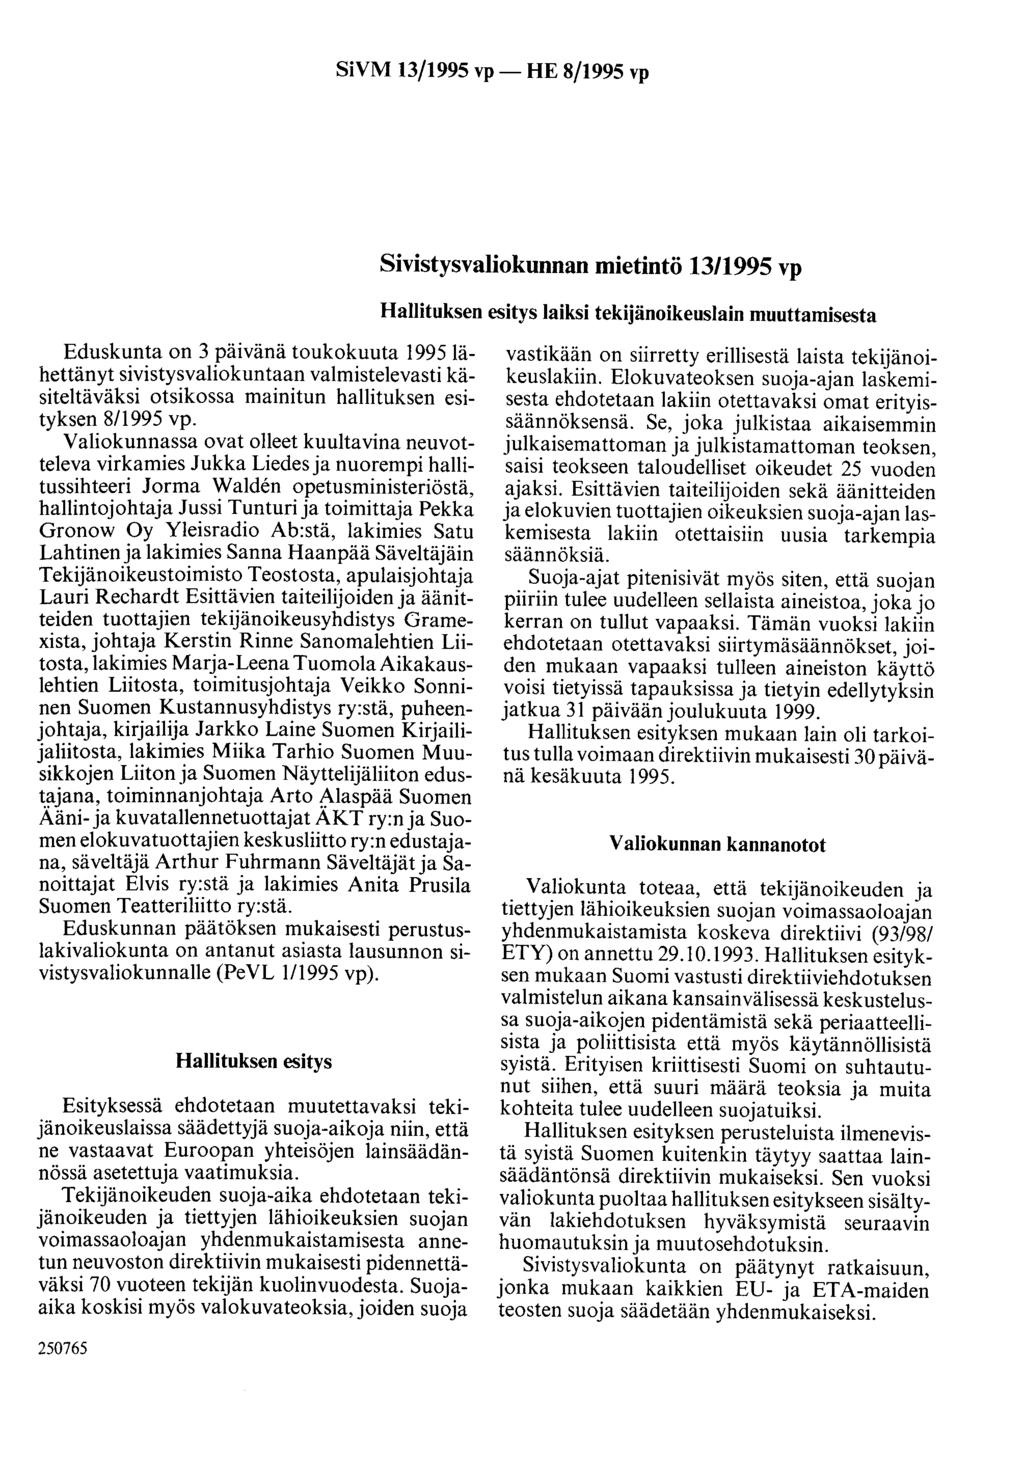 SiVM 13/1995 vp- HE 8/1995 vp Sivistysvaliokunnan mietintö 13/1995 vp Hallituksen esitys laiksi tekijänoikeuslain muuttamisesta Eduskunta on 3 päivänä toukokuuta 1995lähettänyt sivistysvaliokuntaan